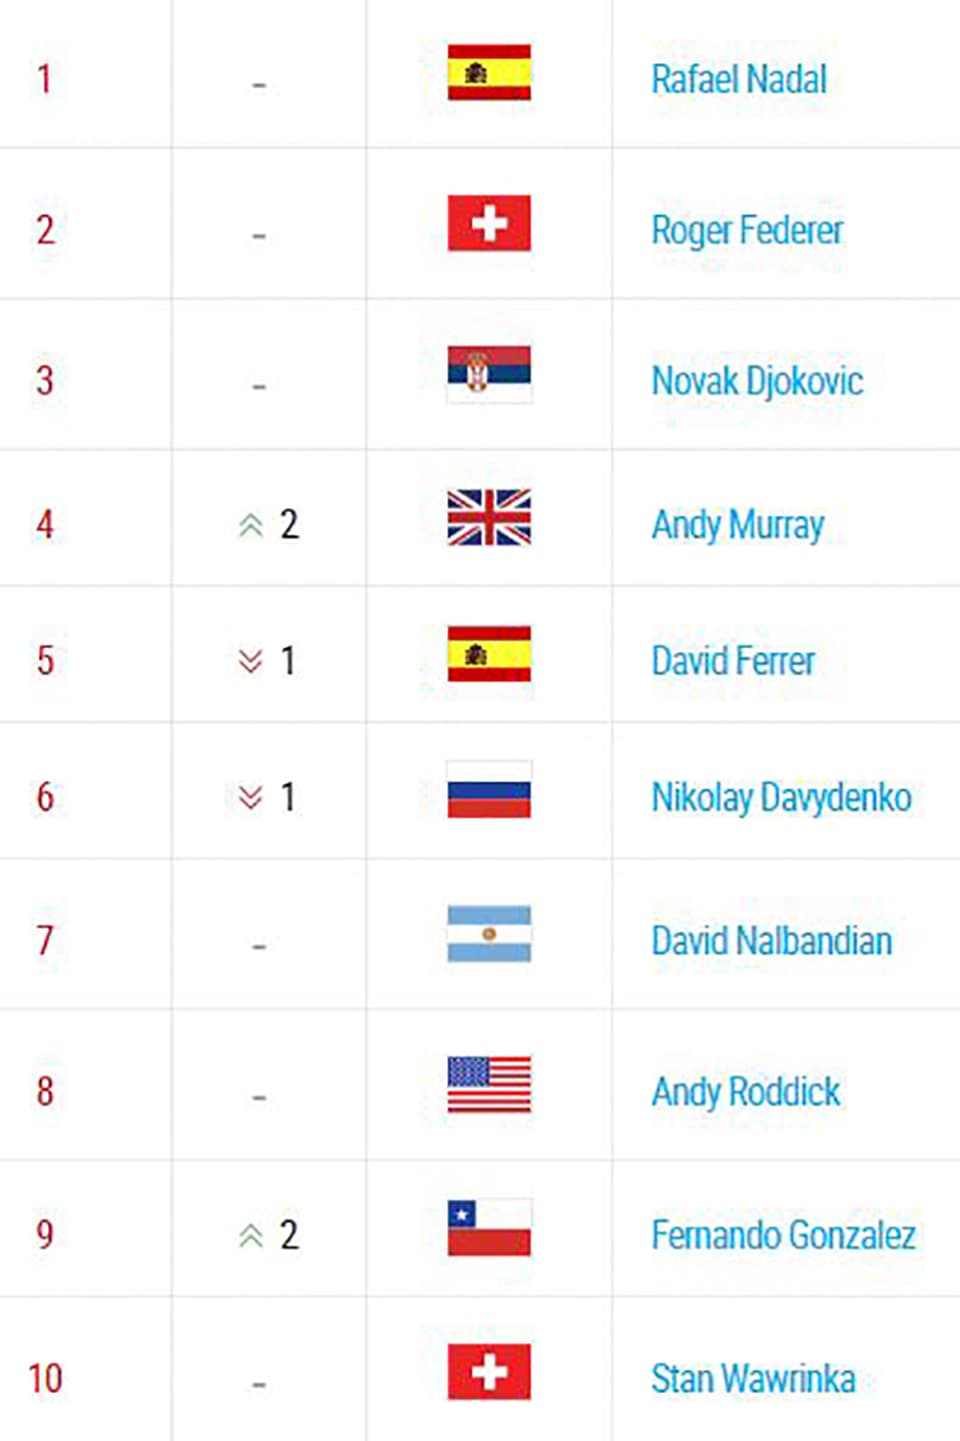 So sah das Ranking nach den US Open 2008 aus.